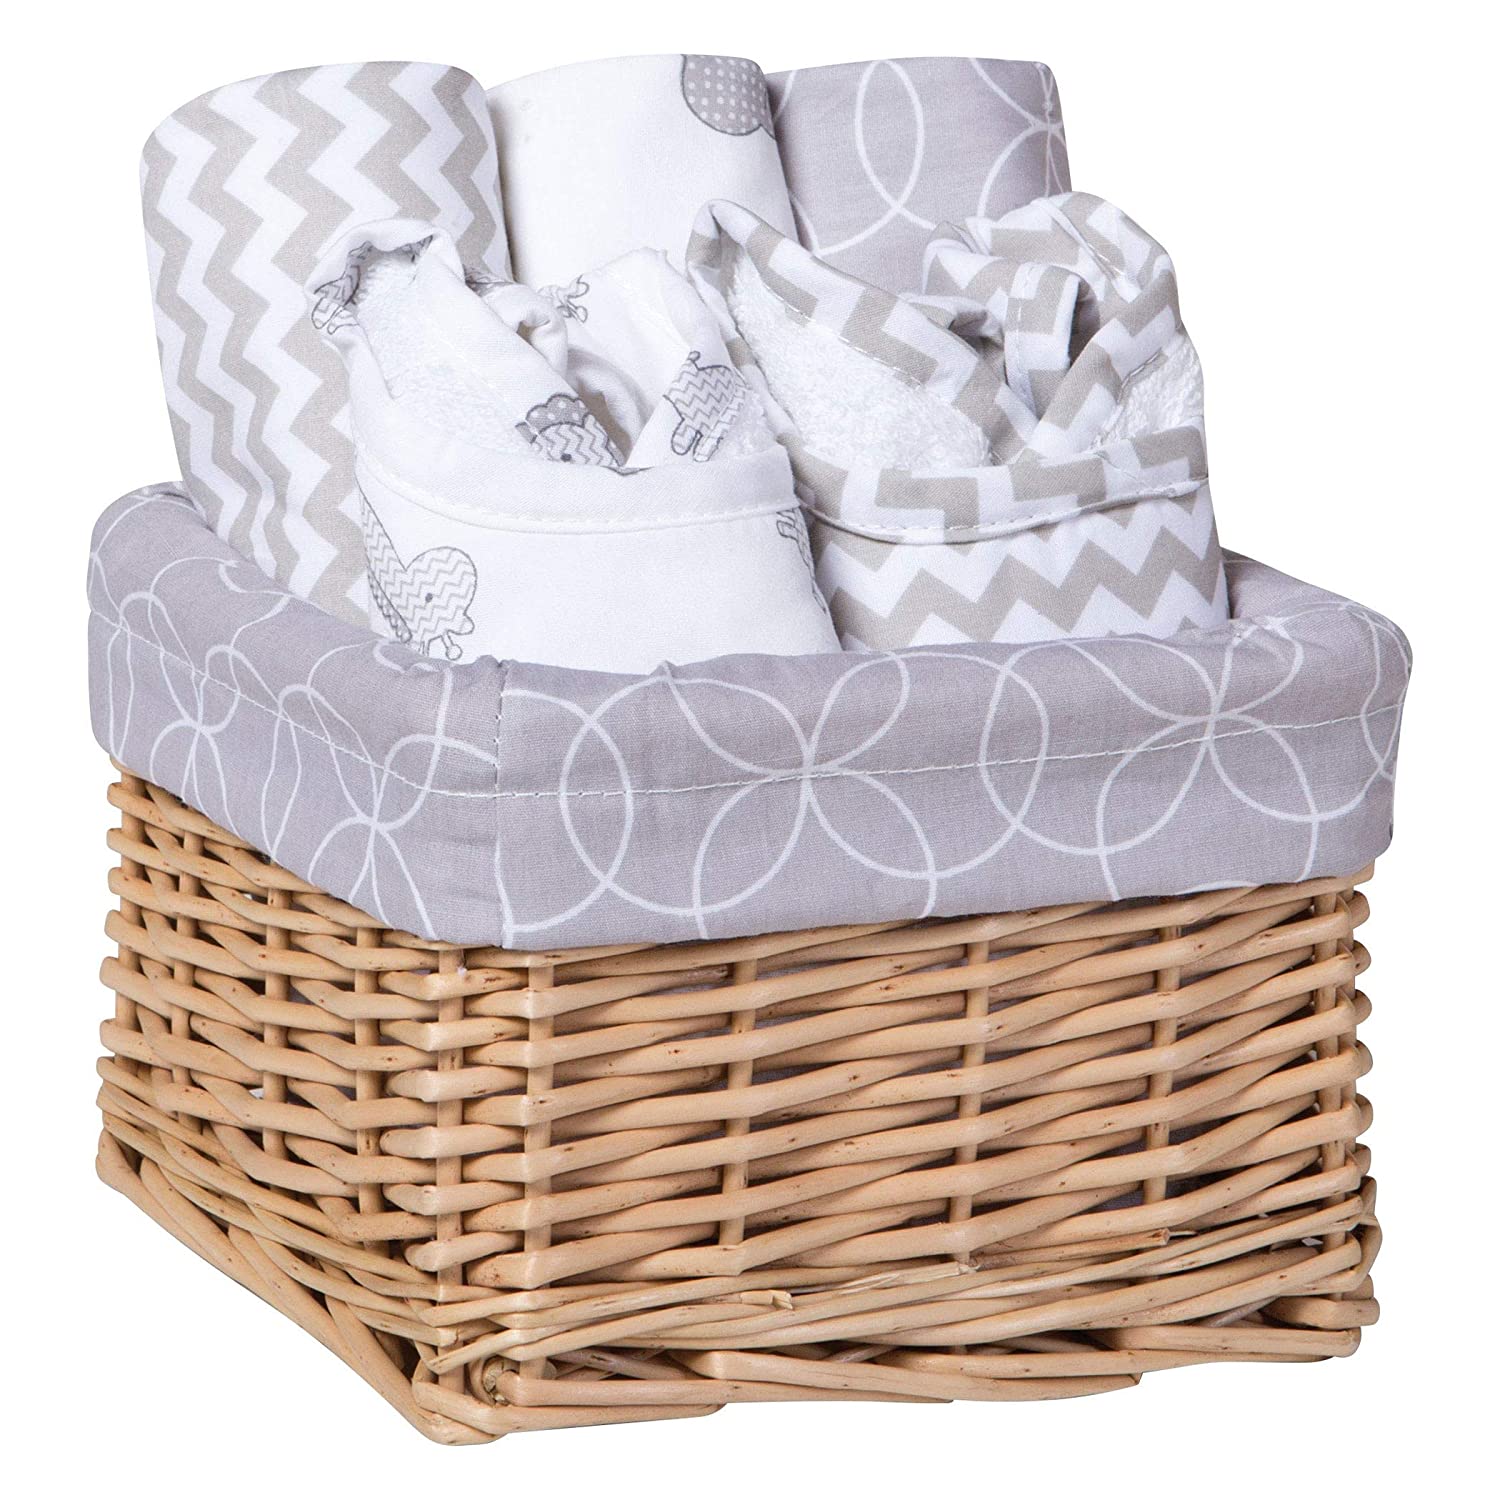 Trend Lab Safari Gray 7 Piece Feeding Basket Gift Set - 2 Deluxe Bibs, 3 Deluxe Burp Cloths, Liner, Willow Basket